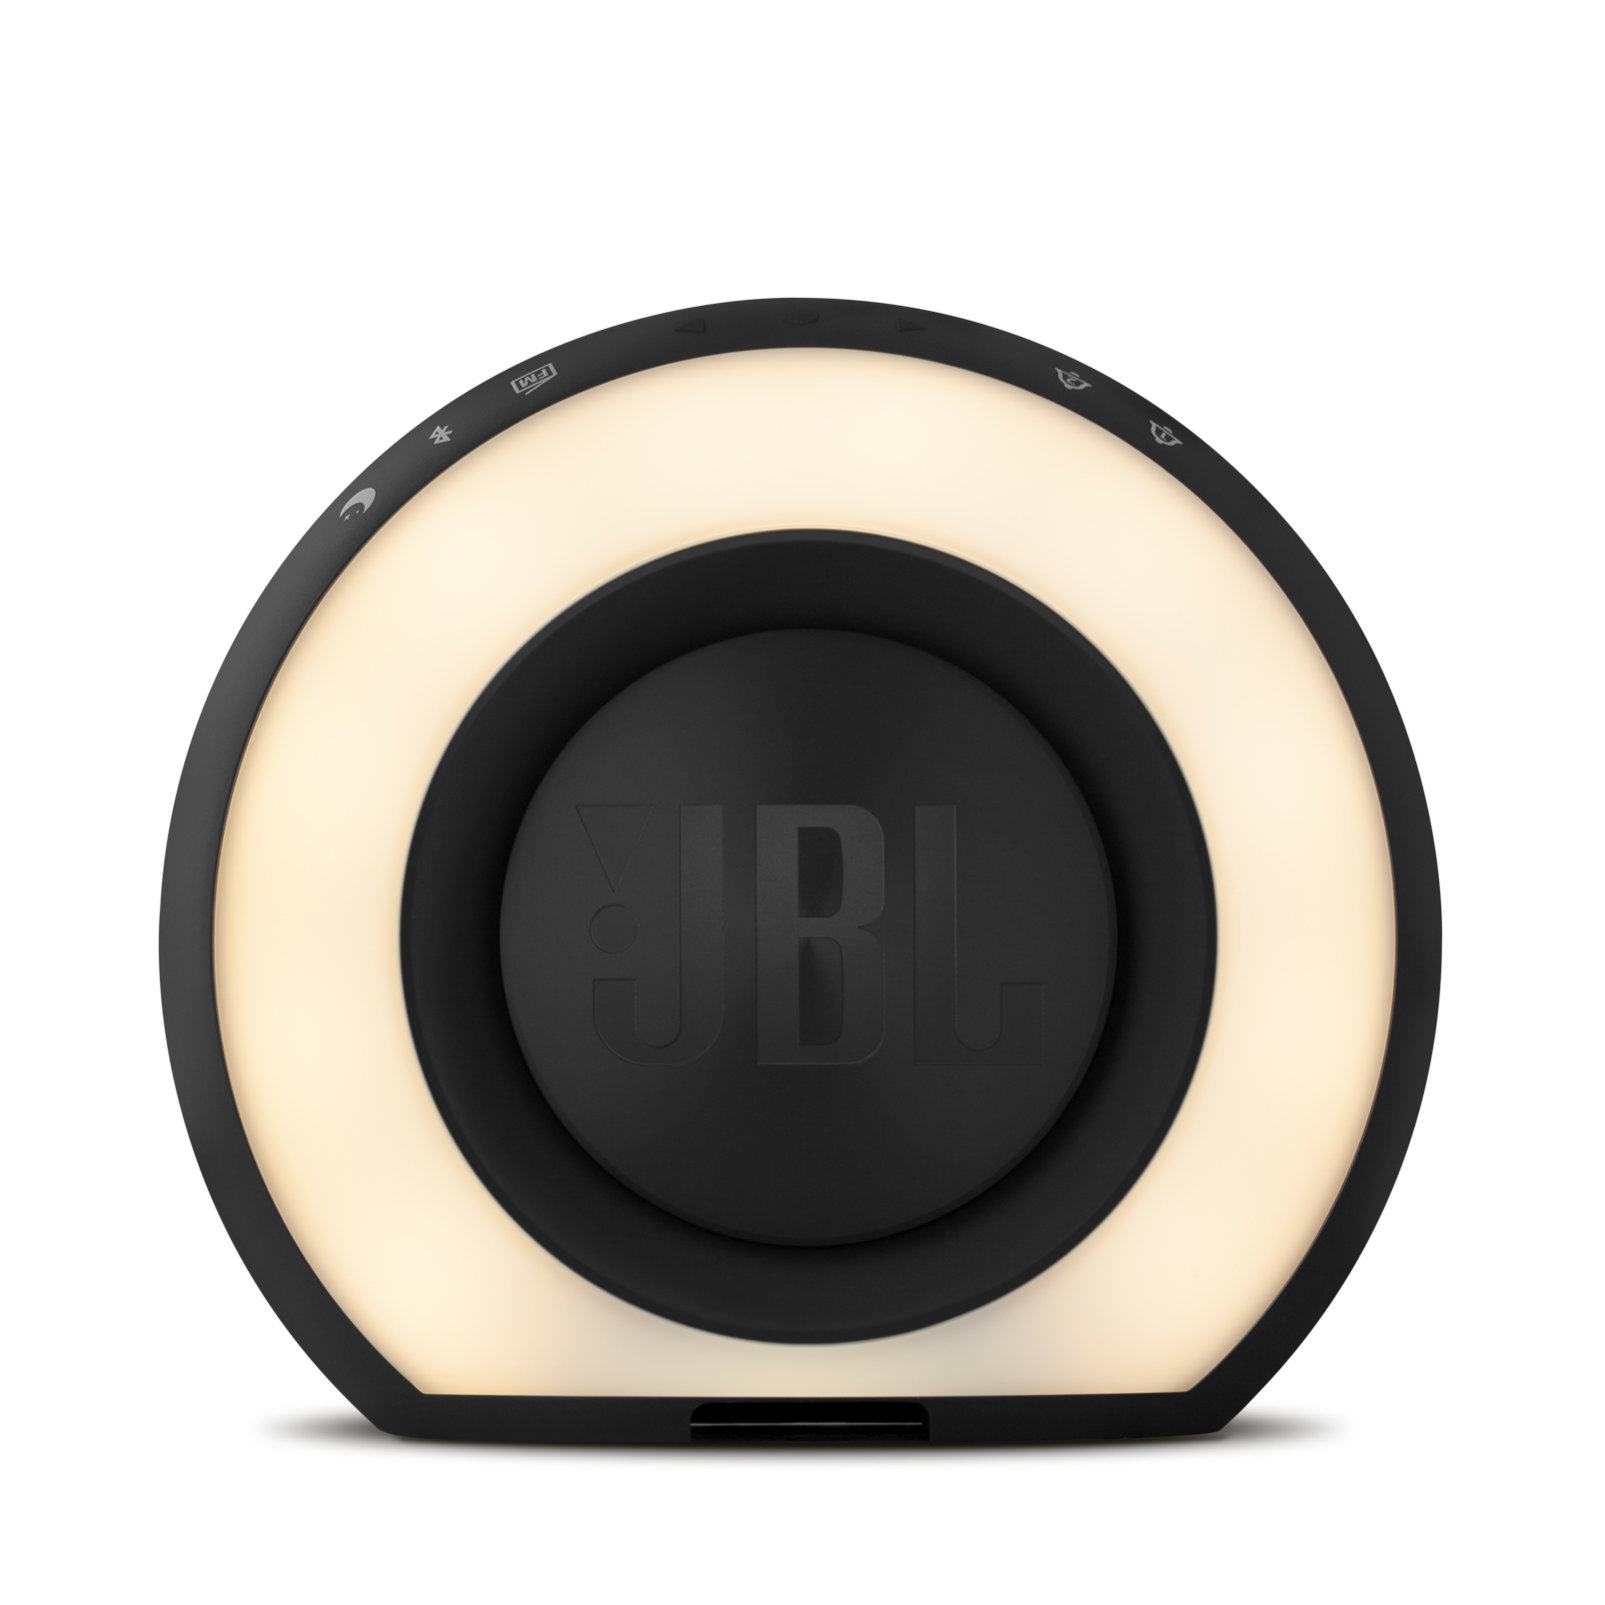 JBL Horizon | アラームクロック、FMラジオ、USB充電機能、およびLEDアンビエントライト搭載Bluetoothスピーカー